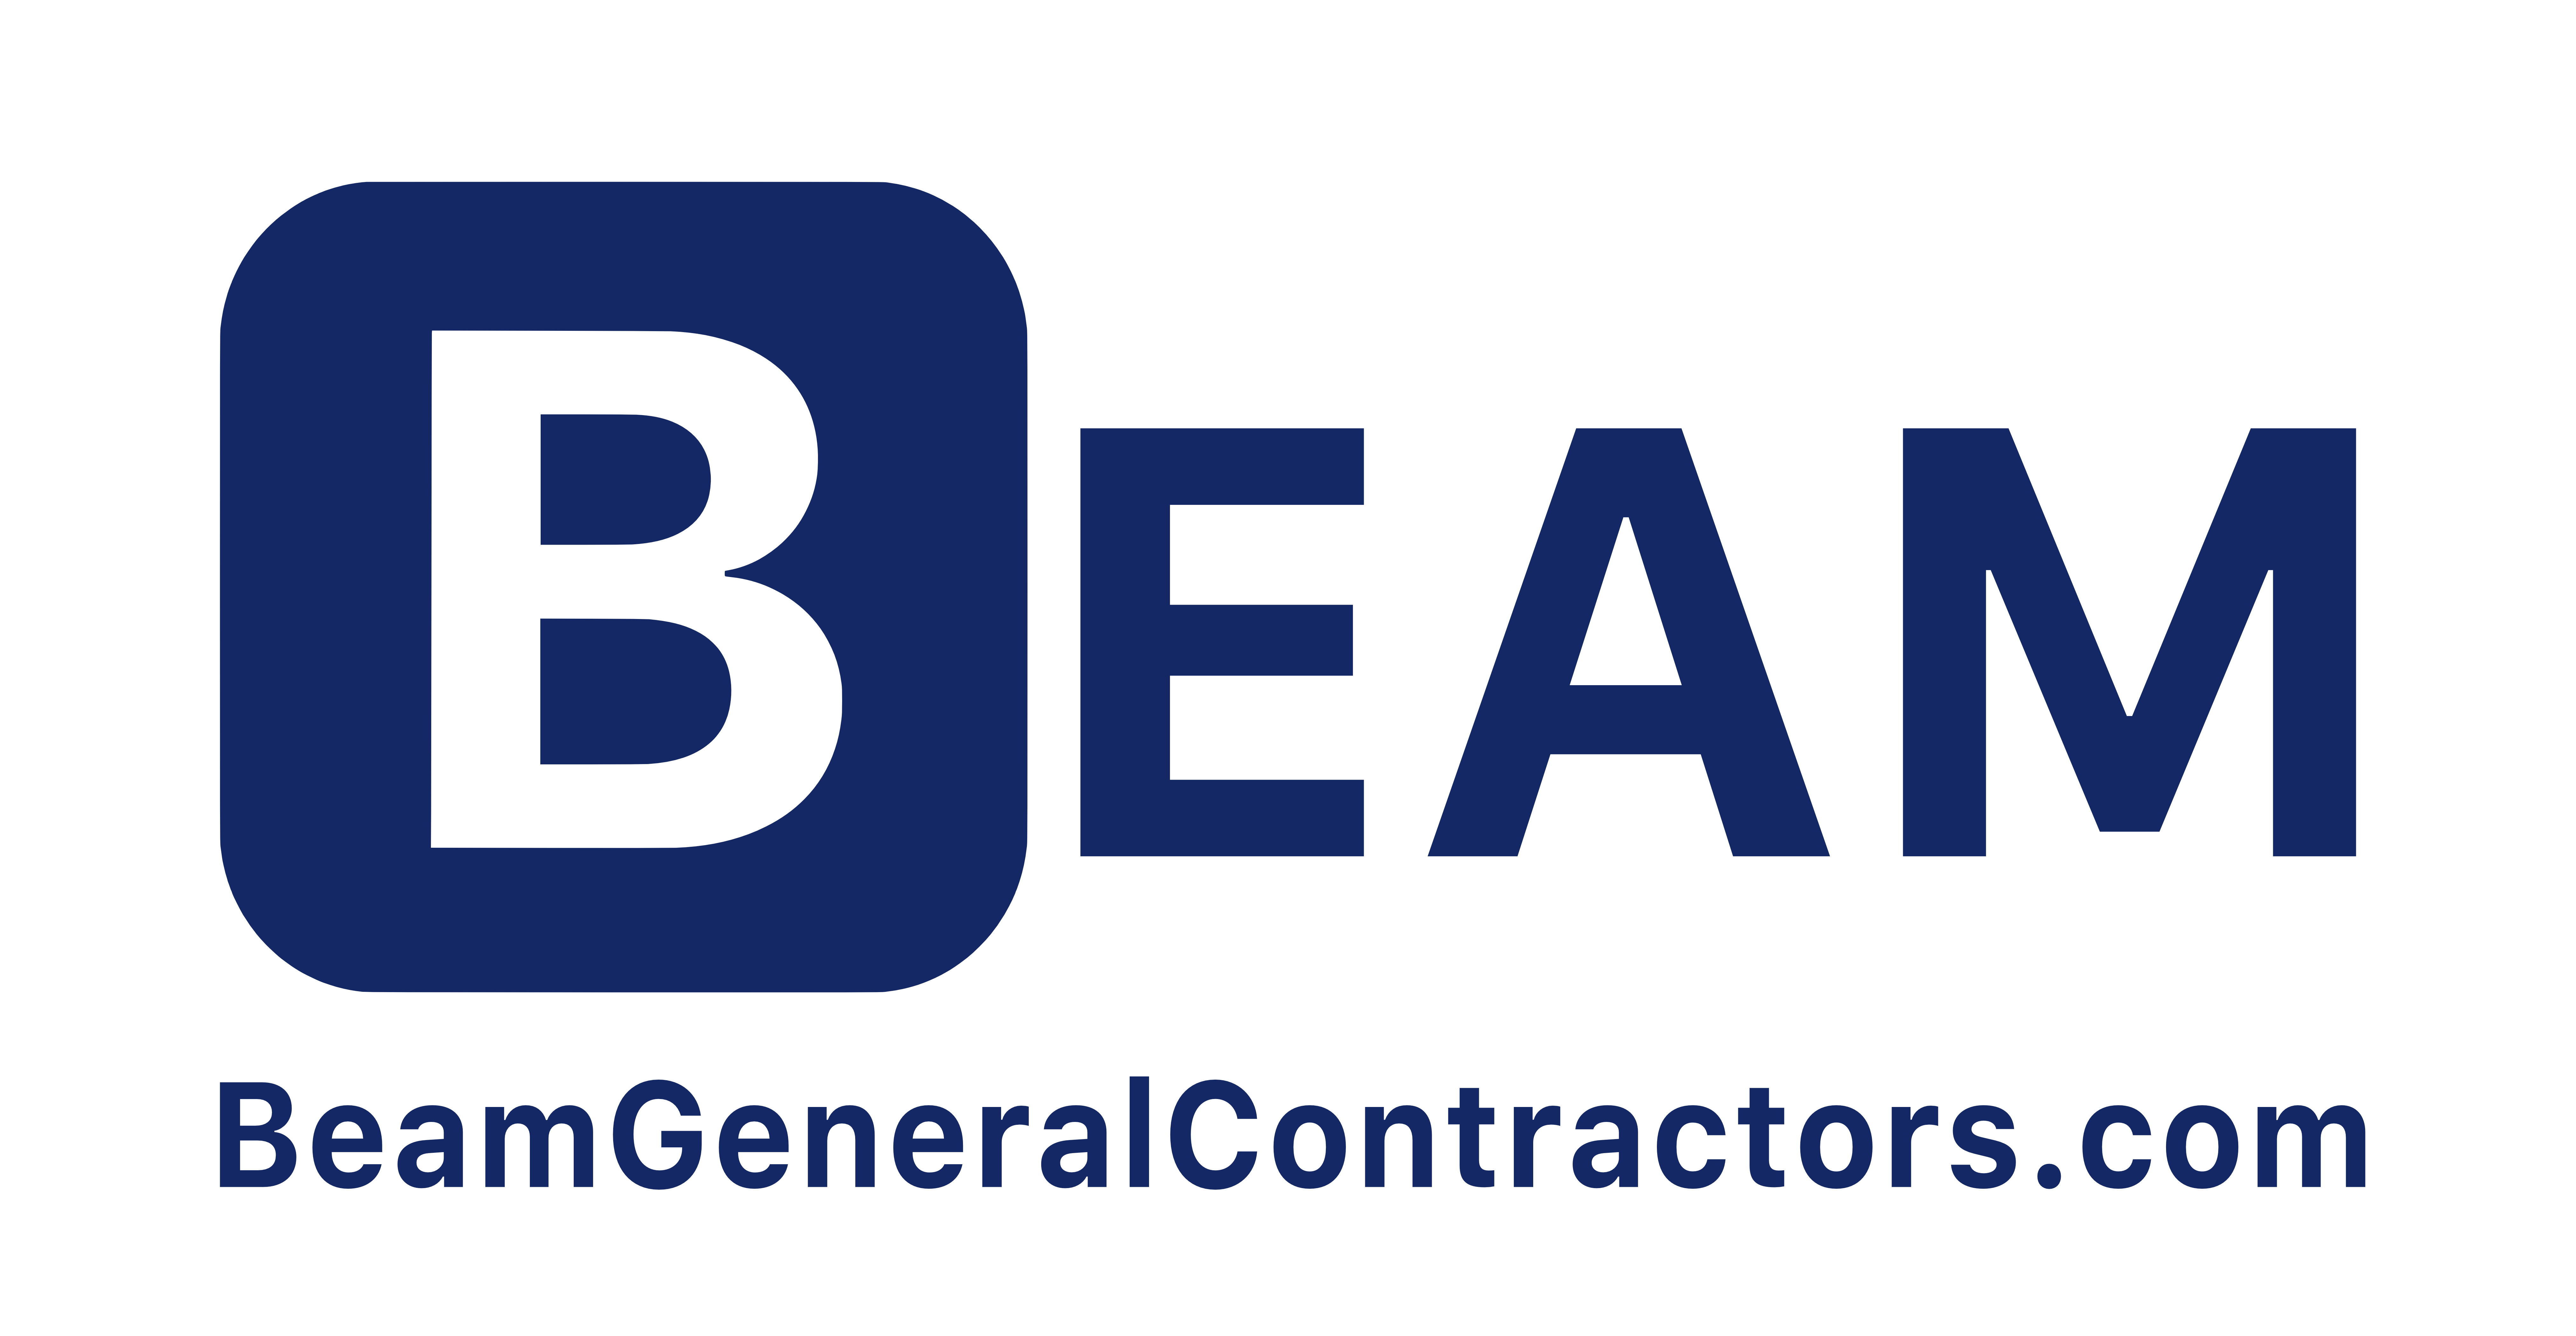 Beam General Contractors